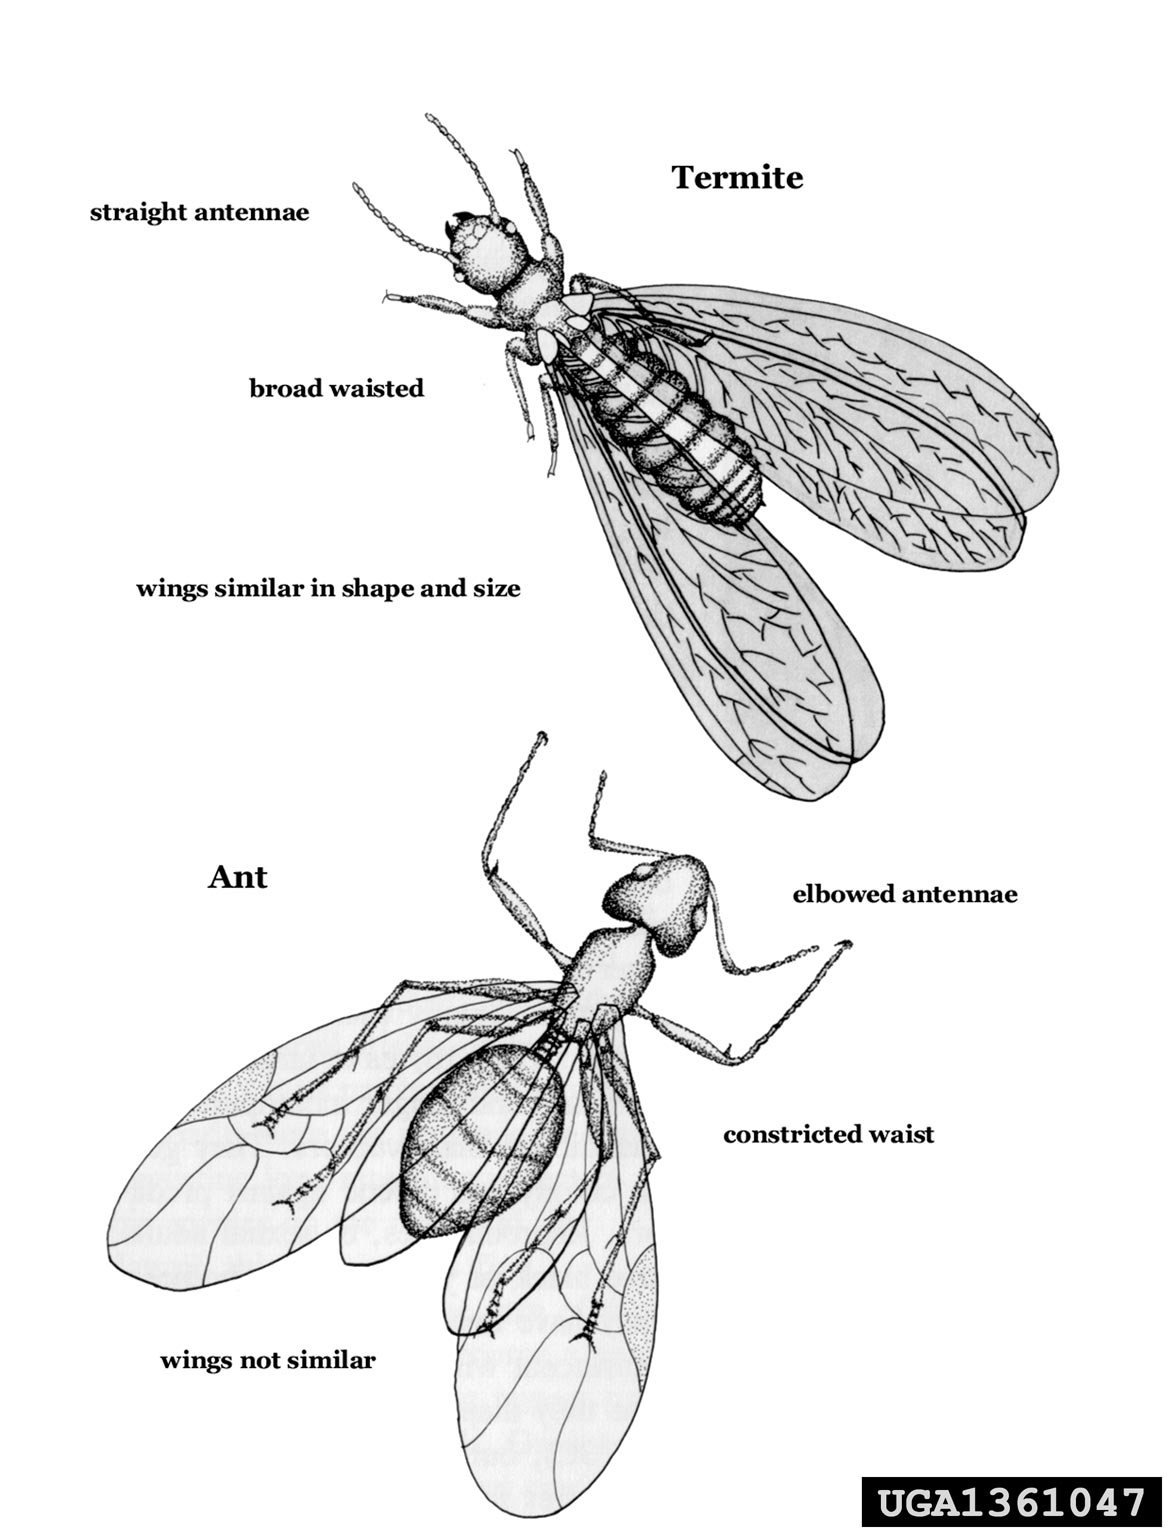 termite-ant comparison